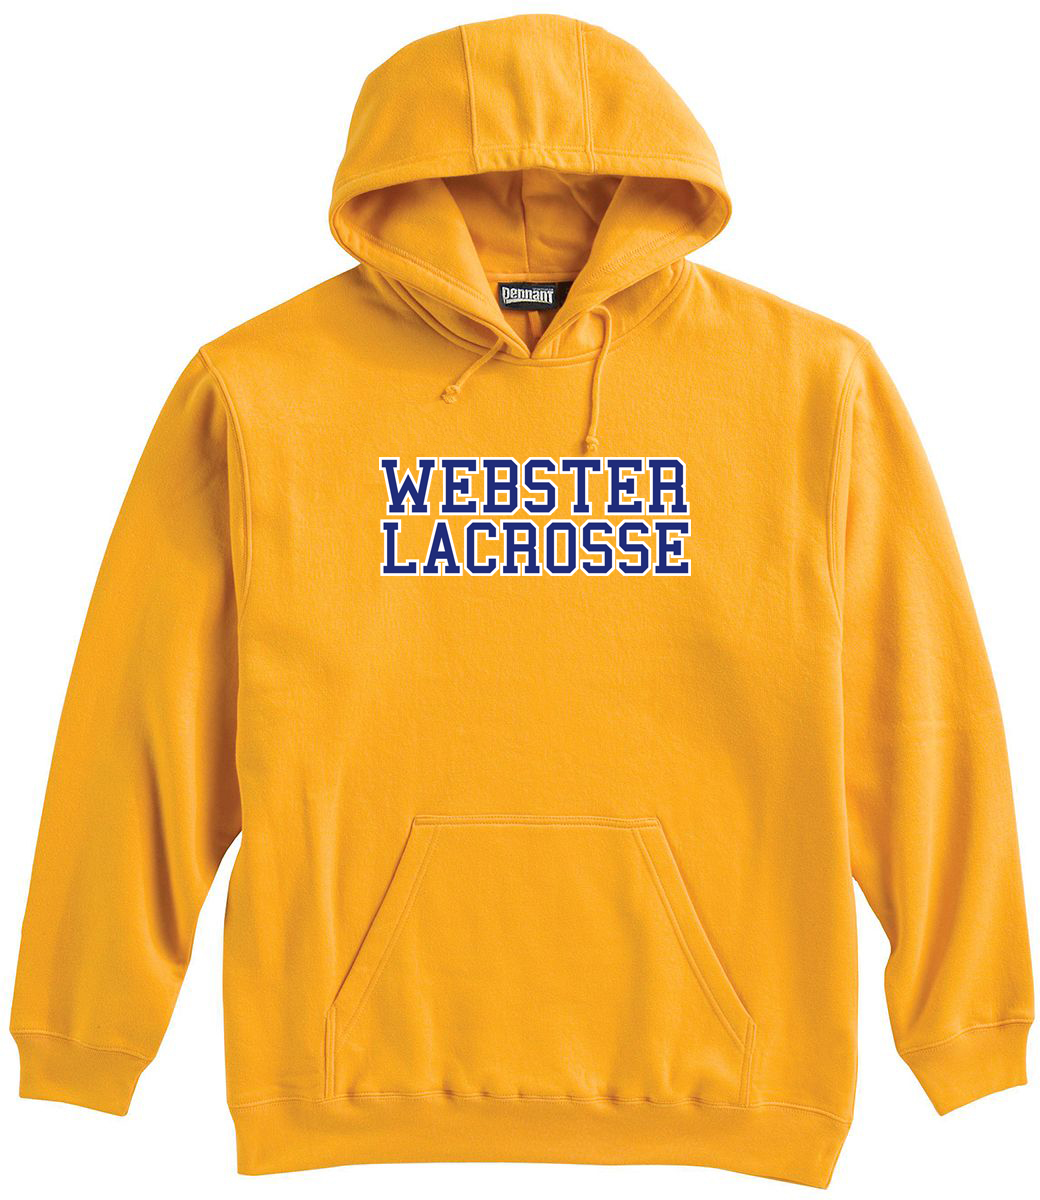 Webster Lacrosse Yellow Sweatshirt